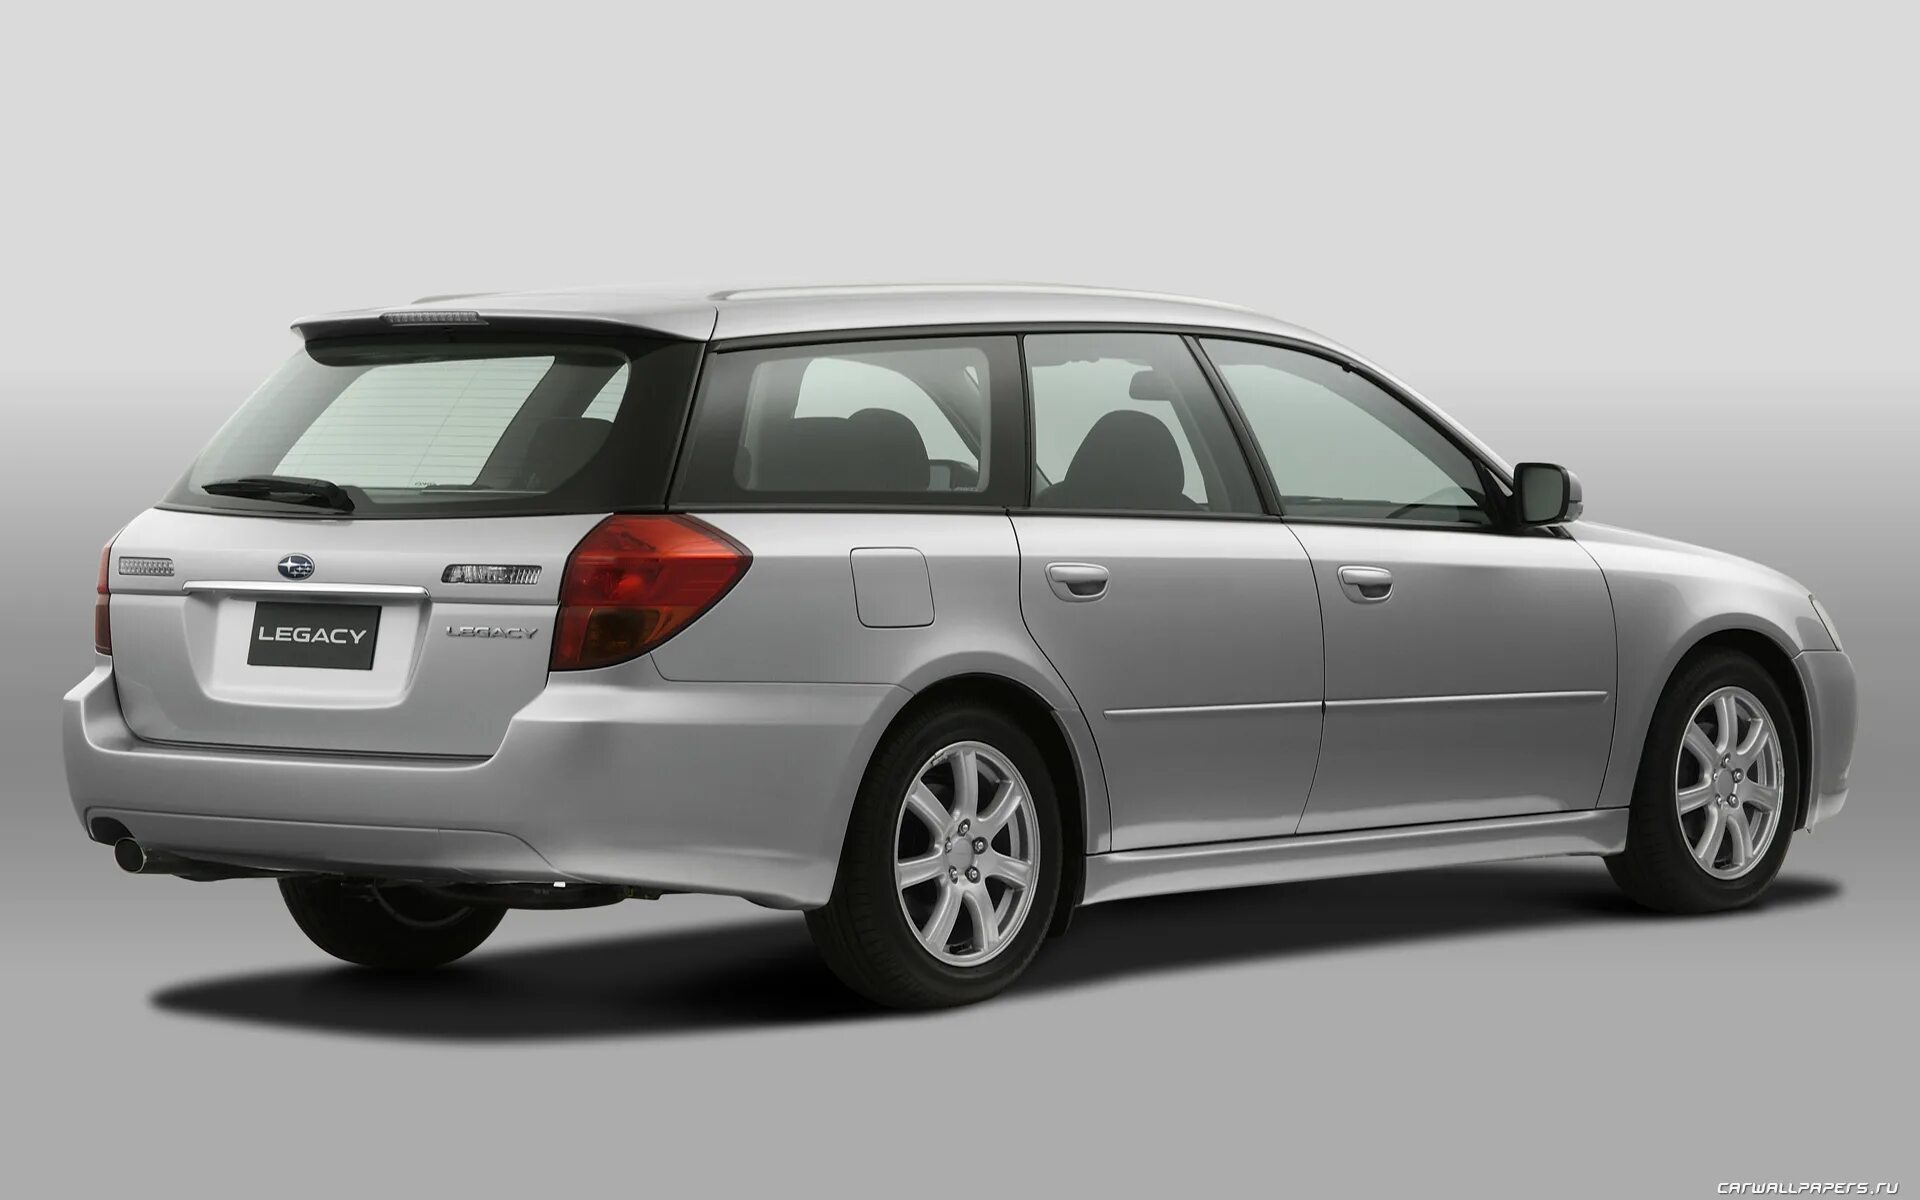 Купить хороший универсал. Субару Легаси 2003 универсал 2.5. Subaru Legacy bp5. Субару Легаси 2004 универсал. Subaru Legacy Wagon.